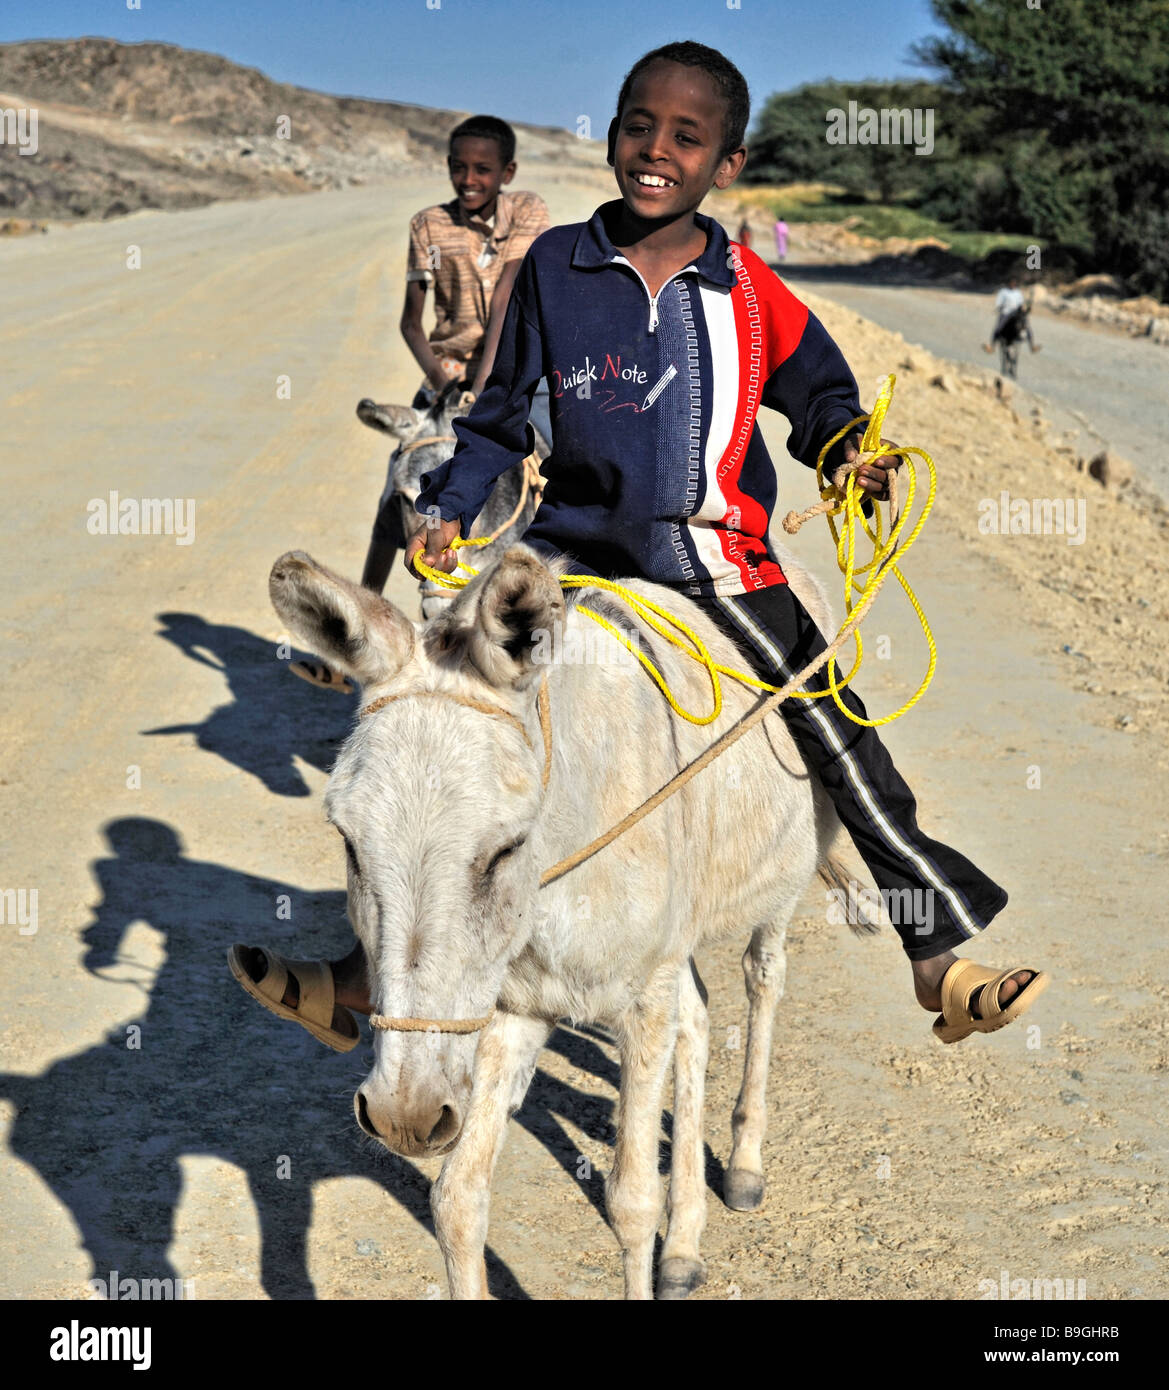 Deux garçons sur donkeus. Souriant et montrant les dents. Sur dusty Road London Nights en désert de Nubie, au nord du Soudan. Afrique du Sud Banque D'Images